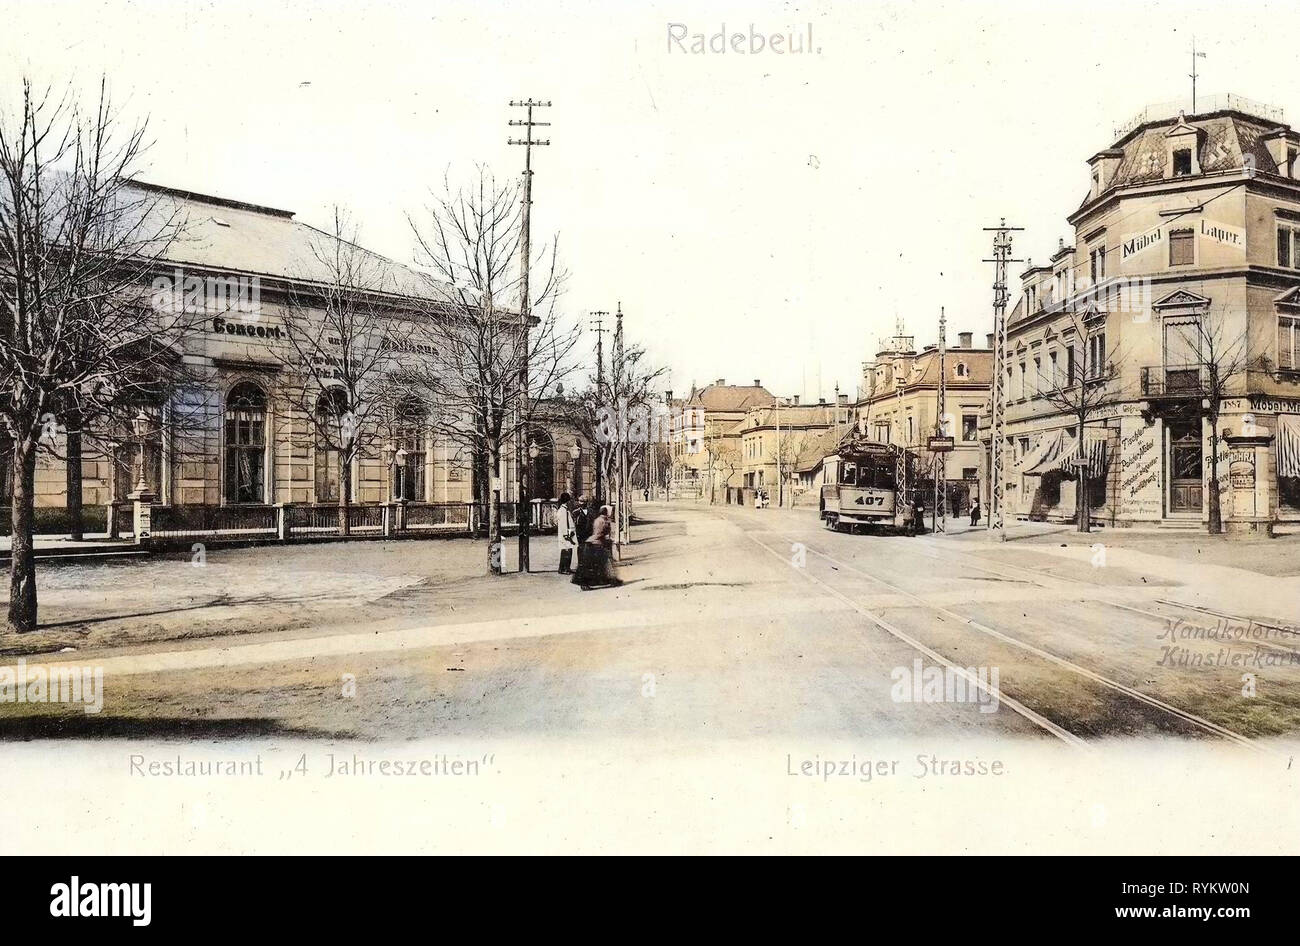 Vier Jahreszeiten, Lößnitzbahn à Radebeul, 1901, Landkreis Meißen, Radebeul, Leipziger Straße, restaurant 4 Jahreszeiten, Allemagne Banque D'Images